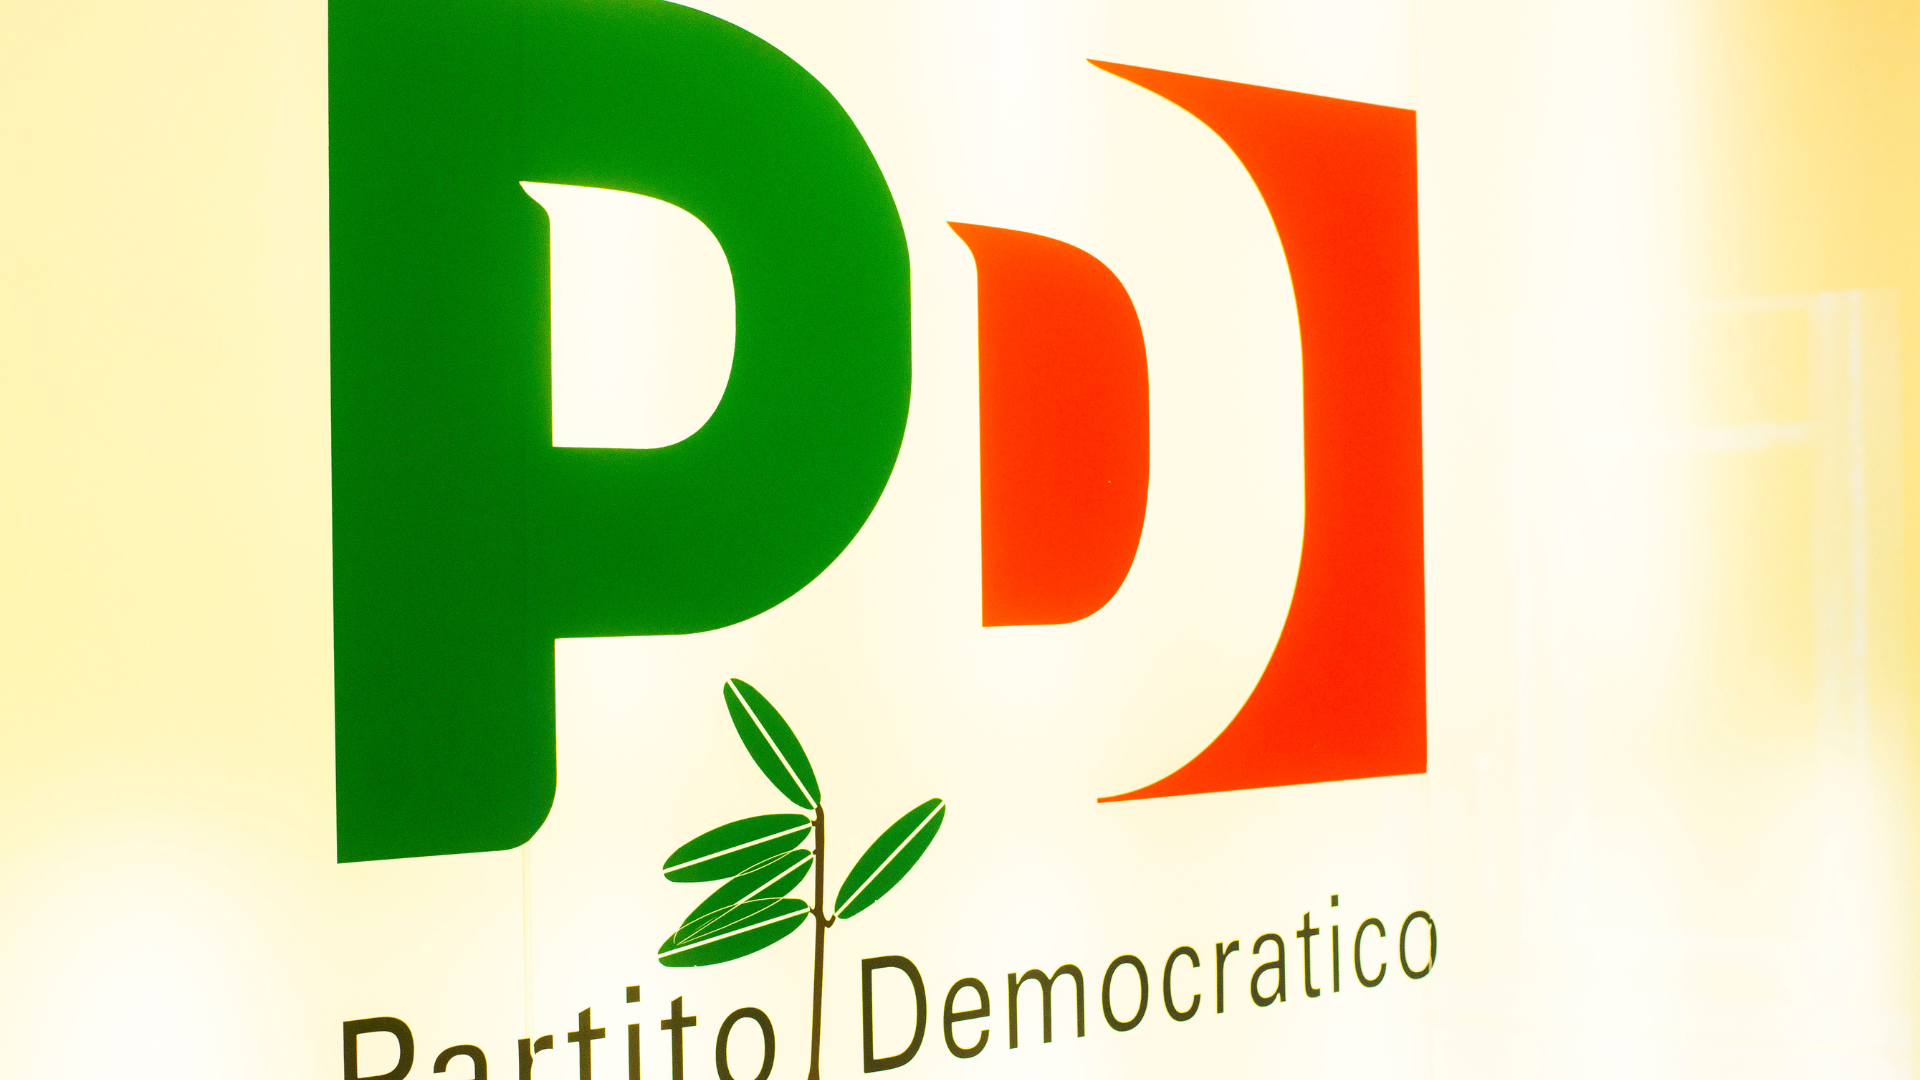 Partito democratico sale al 20,4%, Fratelli d’Italia resta stabile: cosa dicono i sondaggi politici